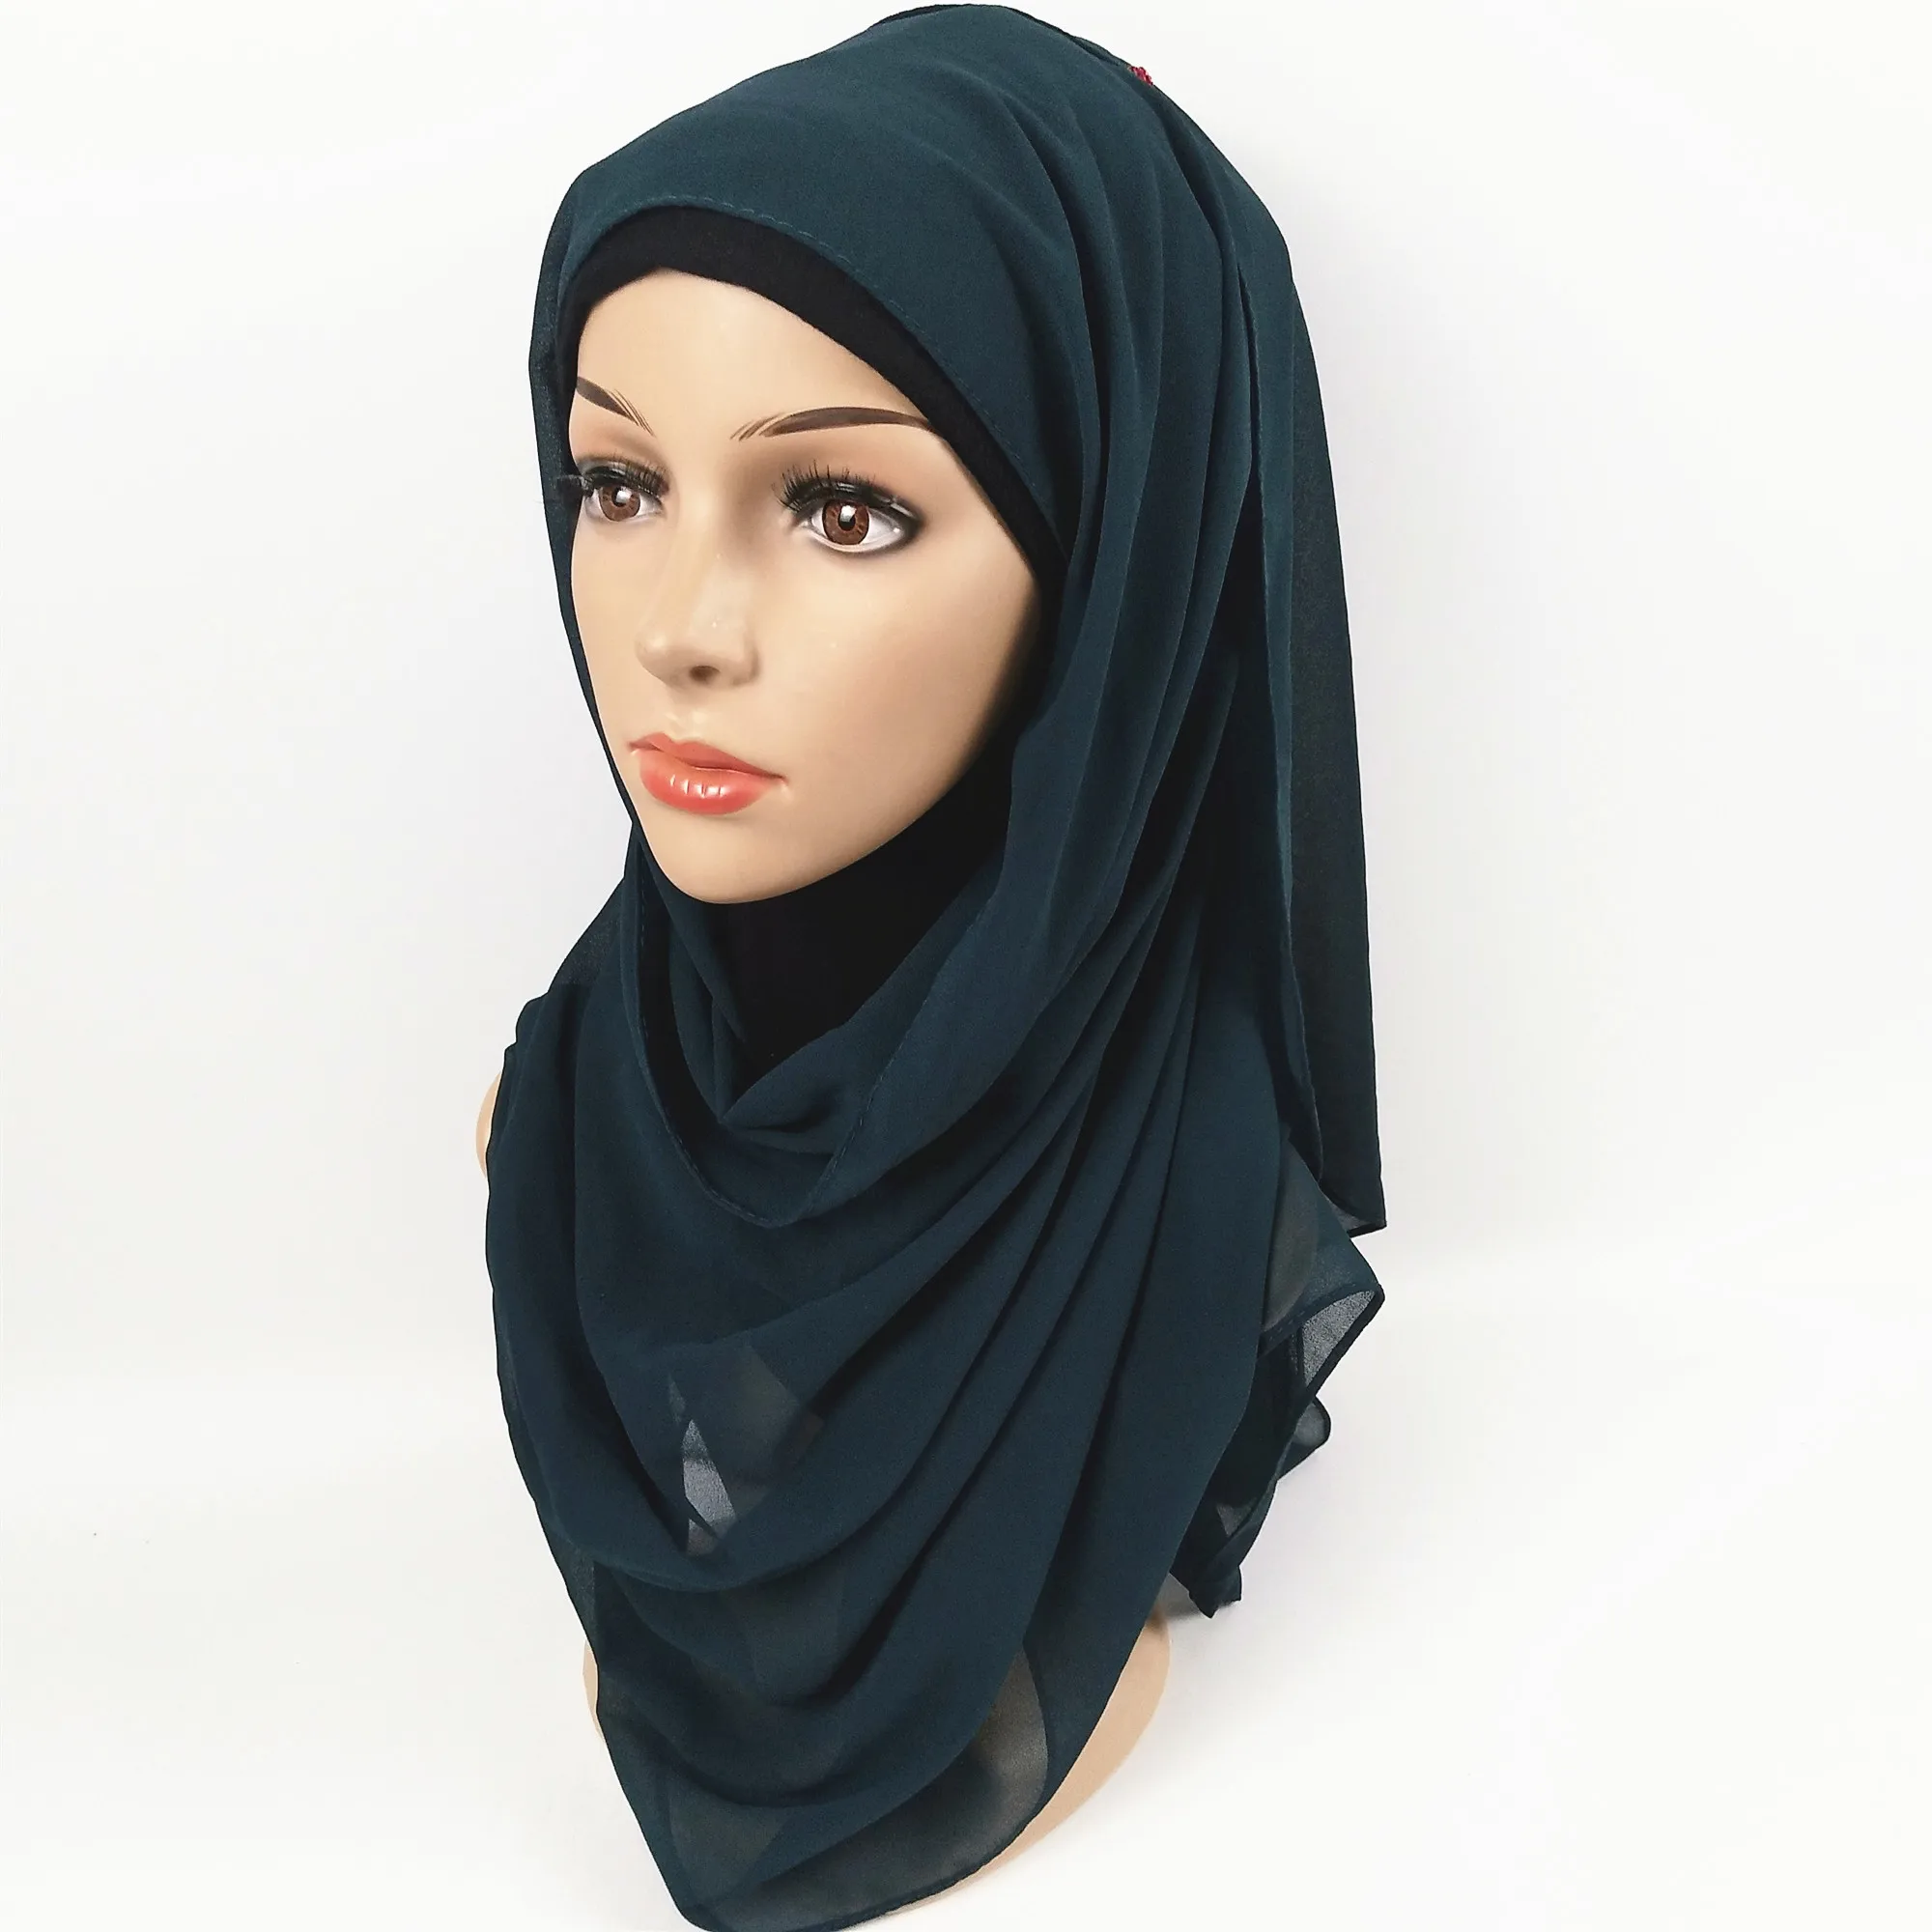 H8 5 шт. высокое качество простой пузырь шифон хиджаб шарф шали повязки популярные хиджаб летние мусульманские шарфы 10 шт./партия